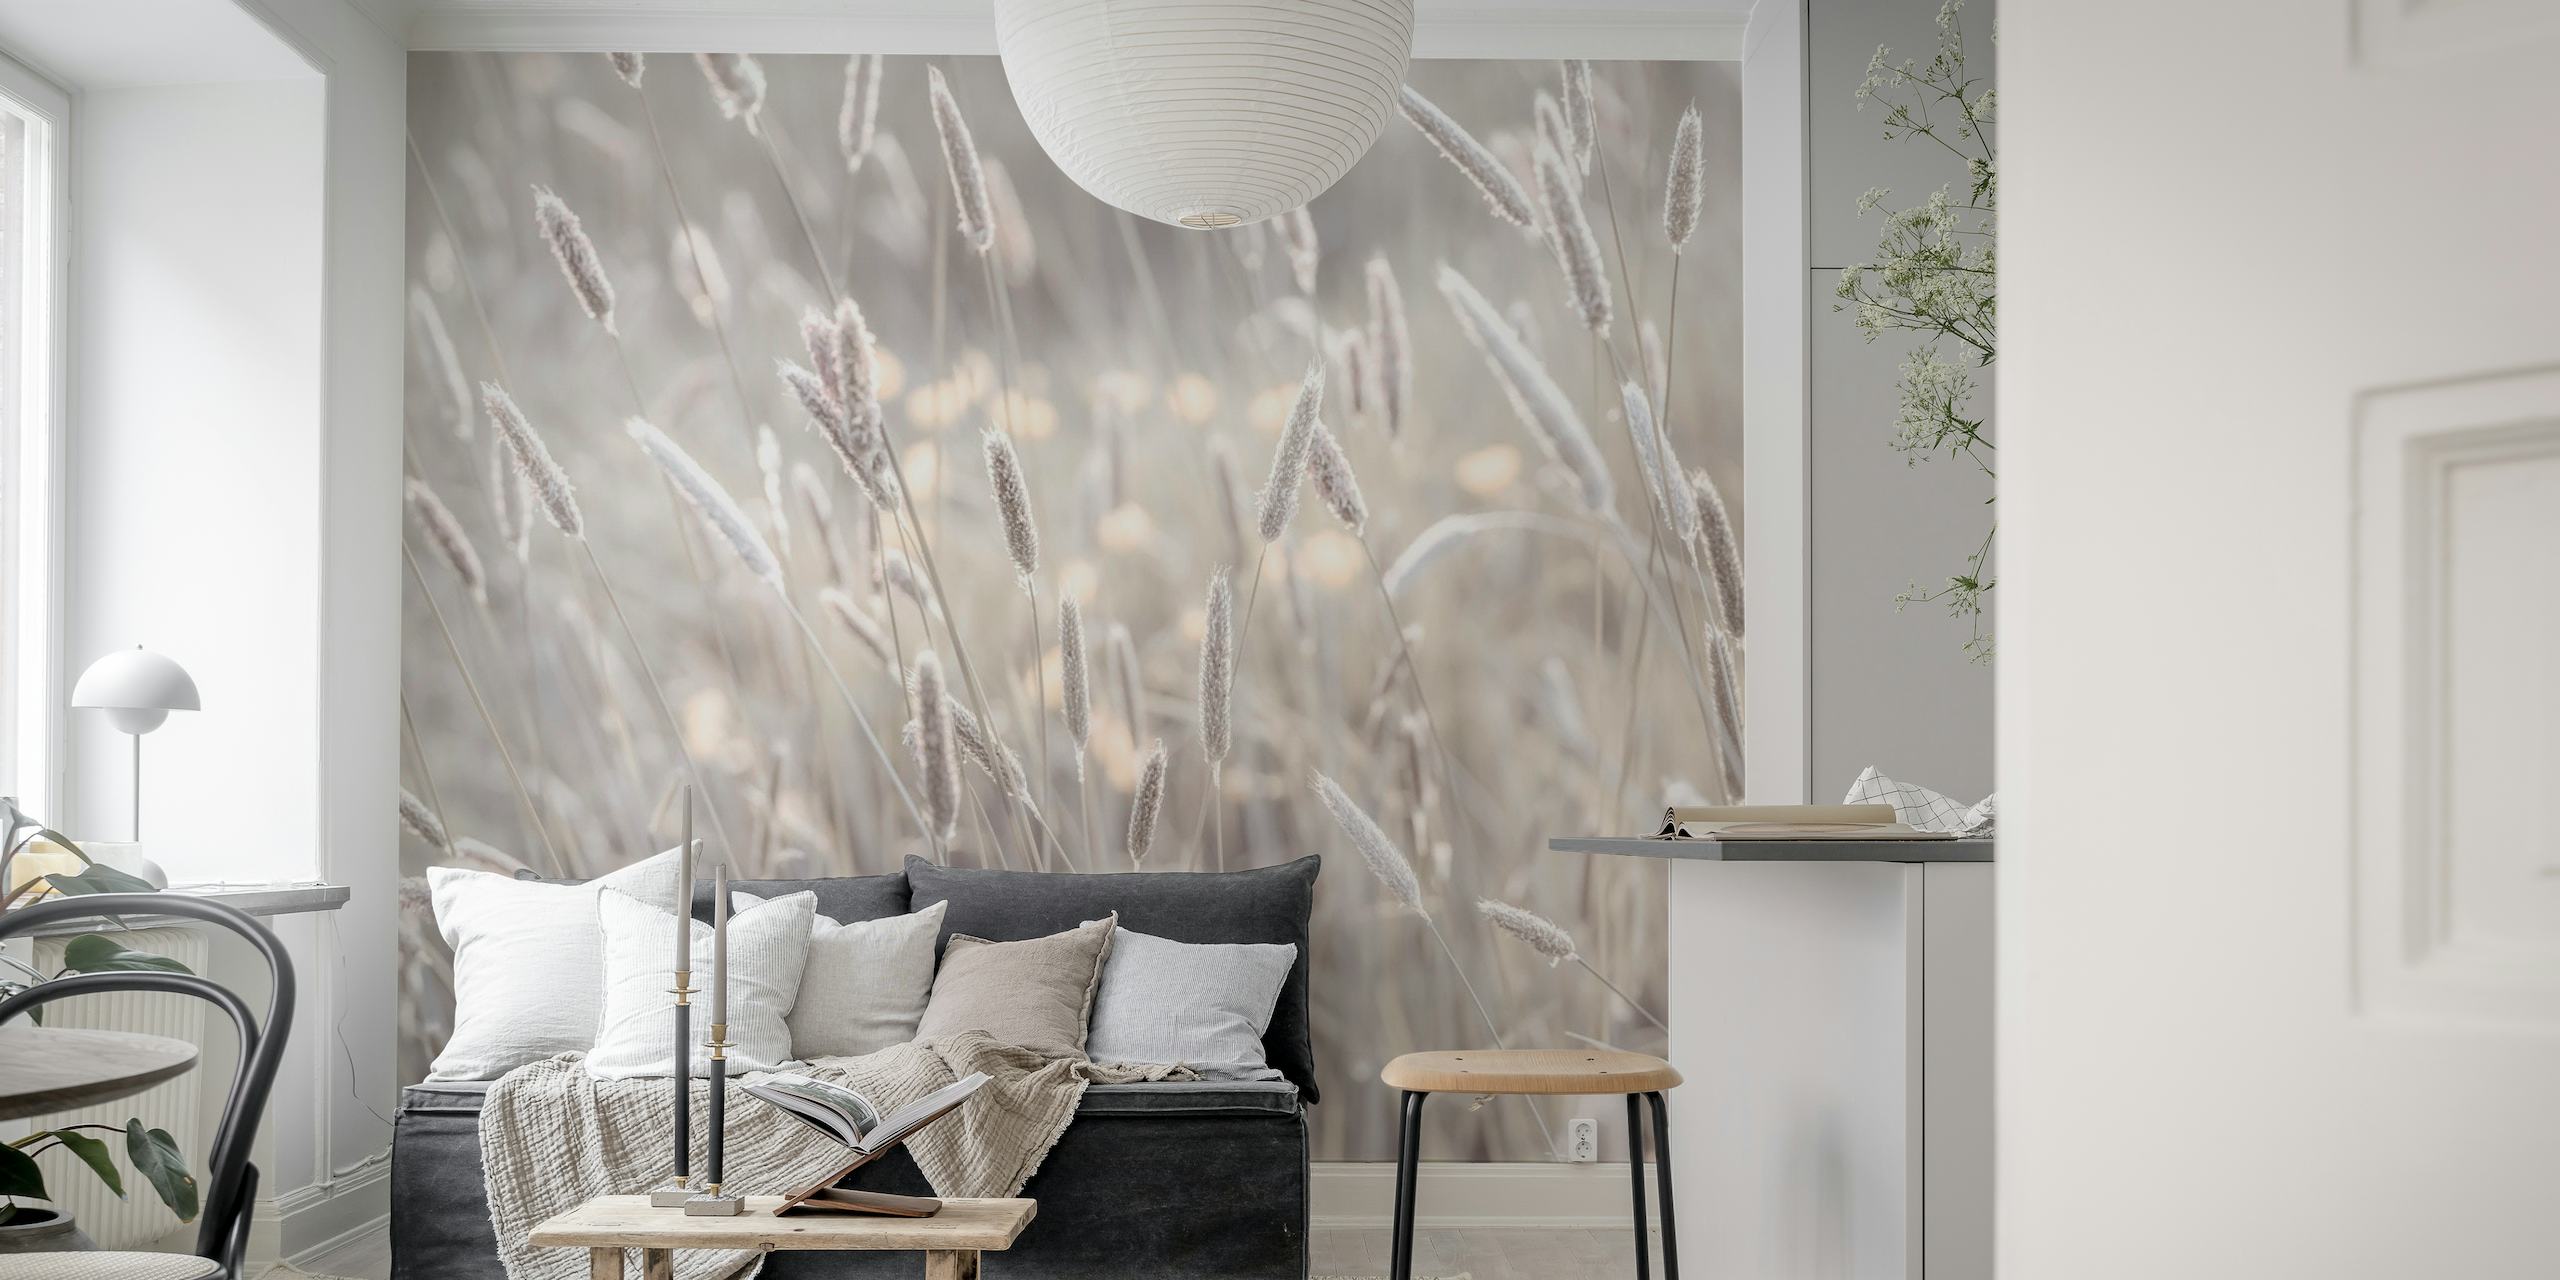 Zidni mural Meadow's Bliss s nježno sivim i prljavo bijelim nijansama, prikazuje spokojne slike livada